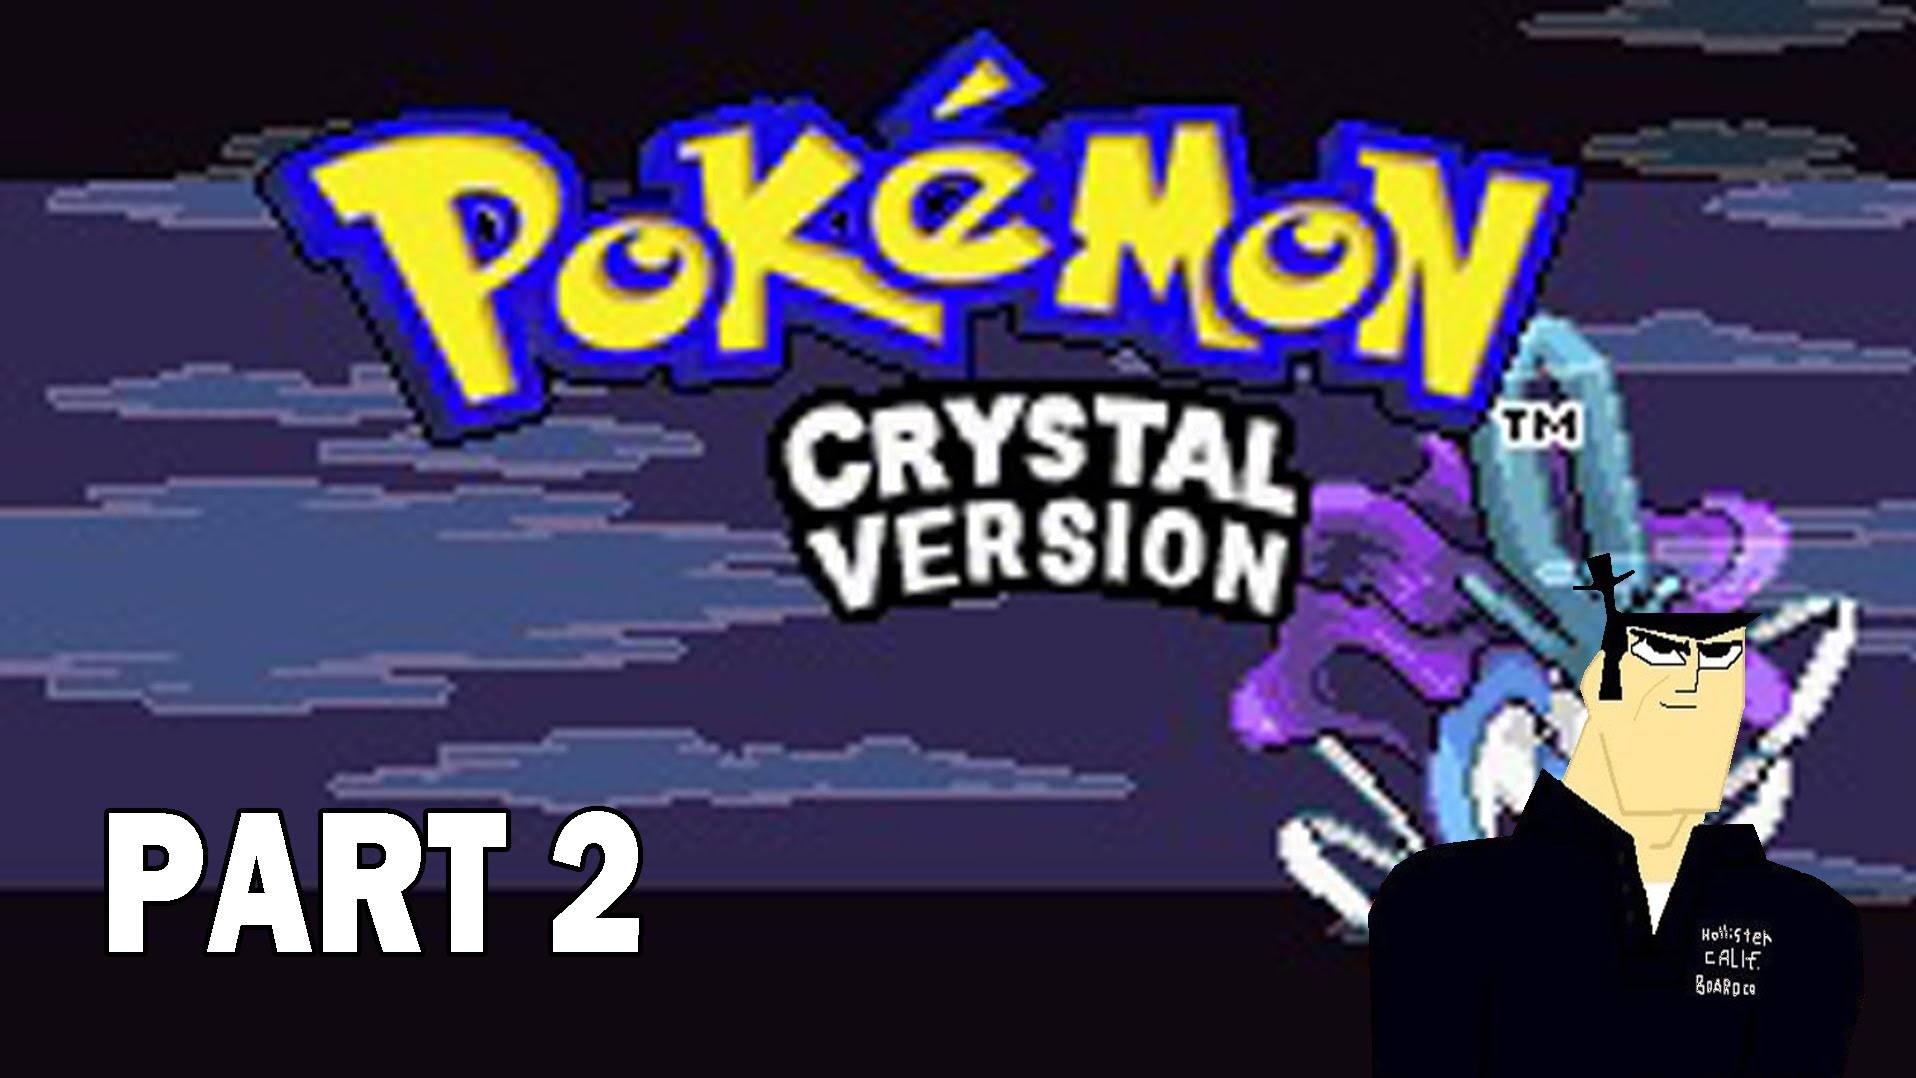 Pokémon Crystal Version Backgrounds on Wallpapers Vista